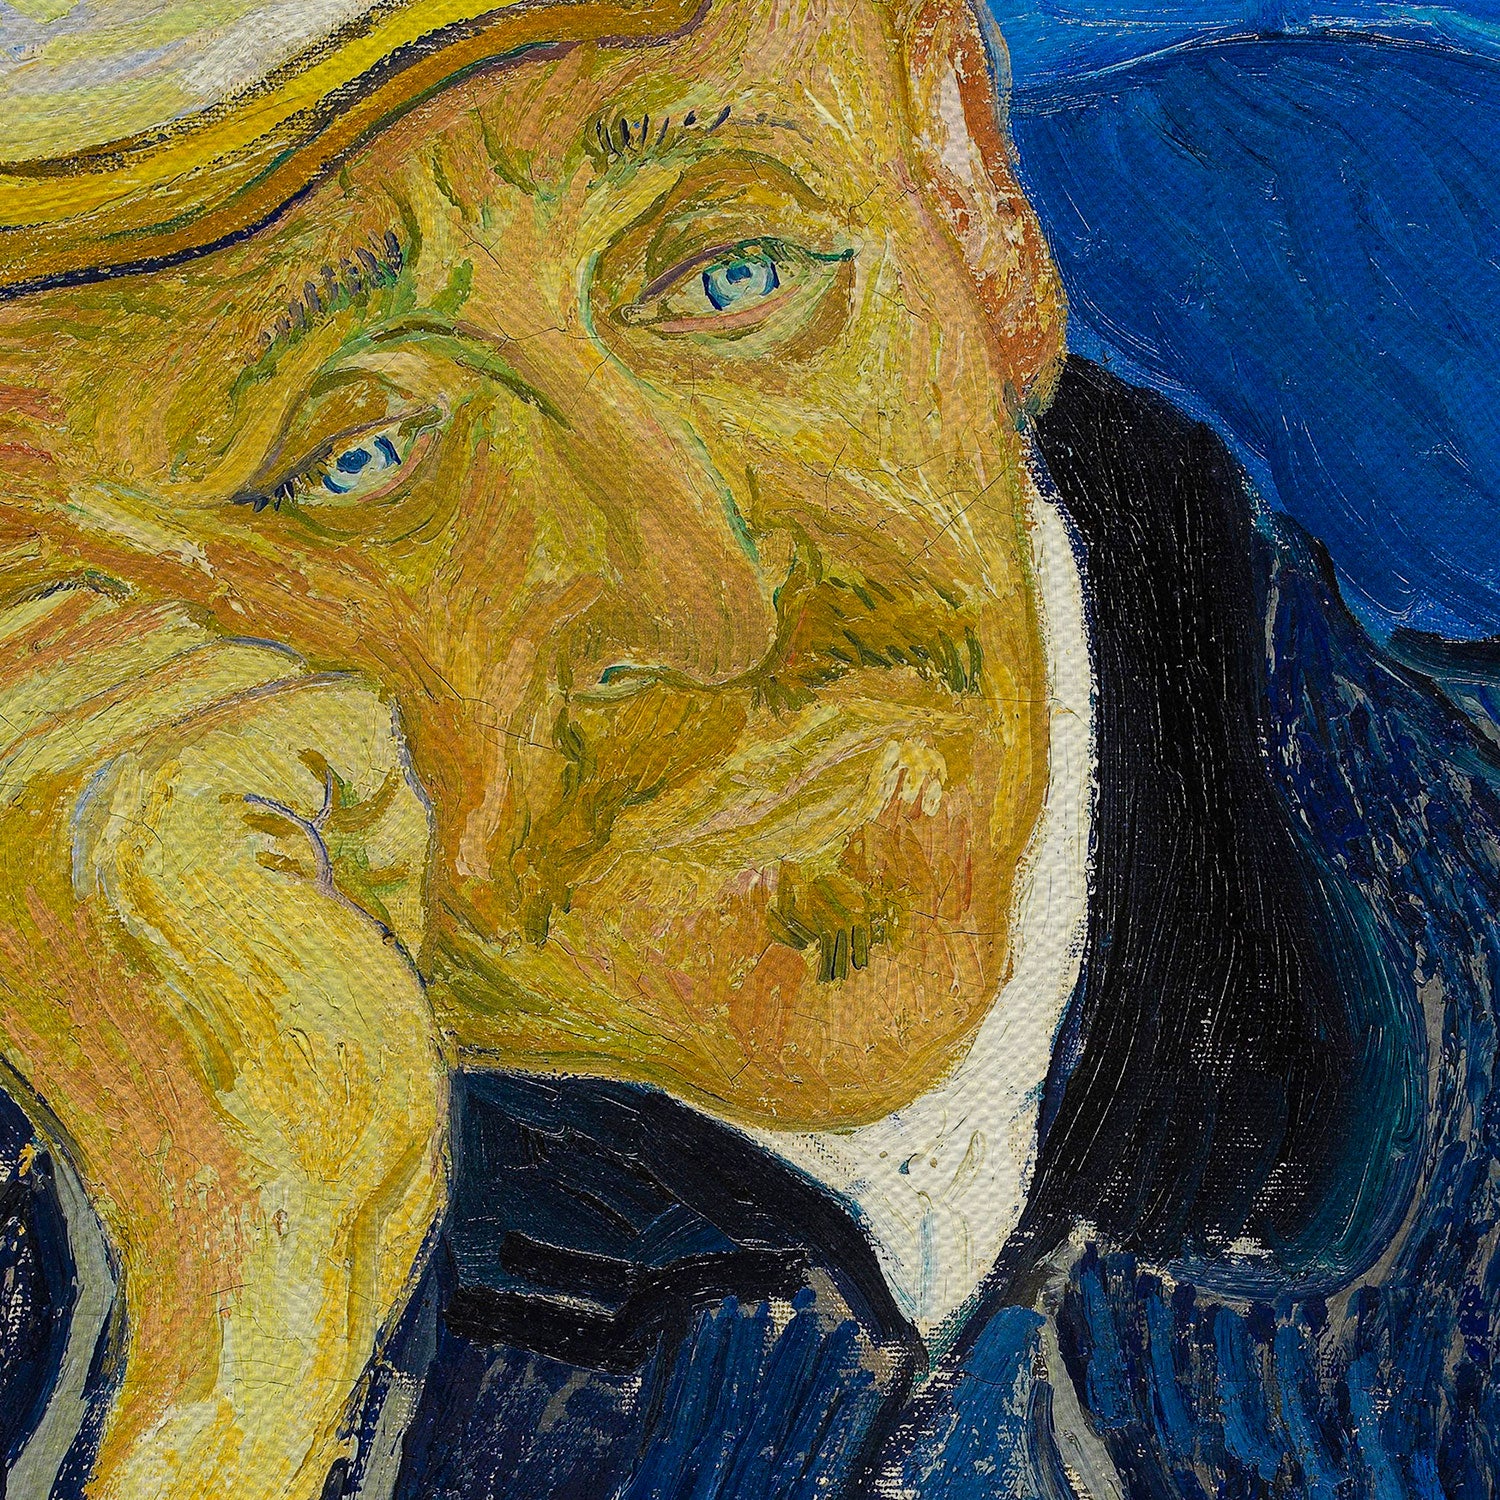 Vincent Van Gogh Portrait Of Dr. Gachet Canvas Wall Art